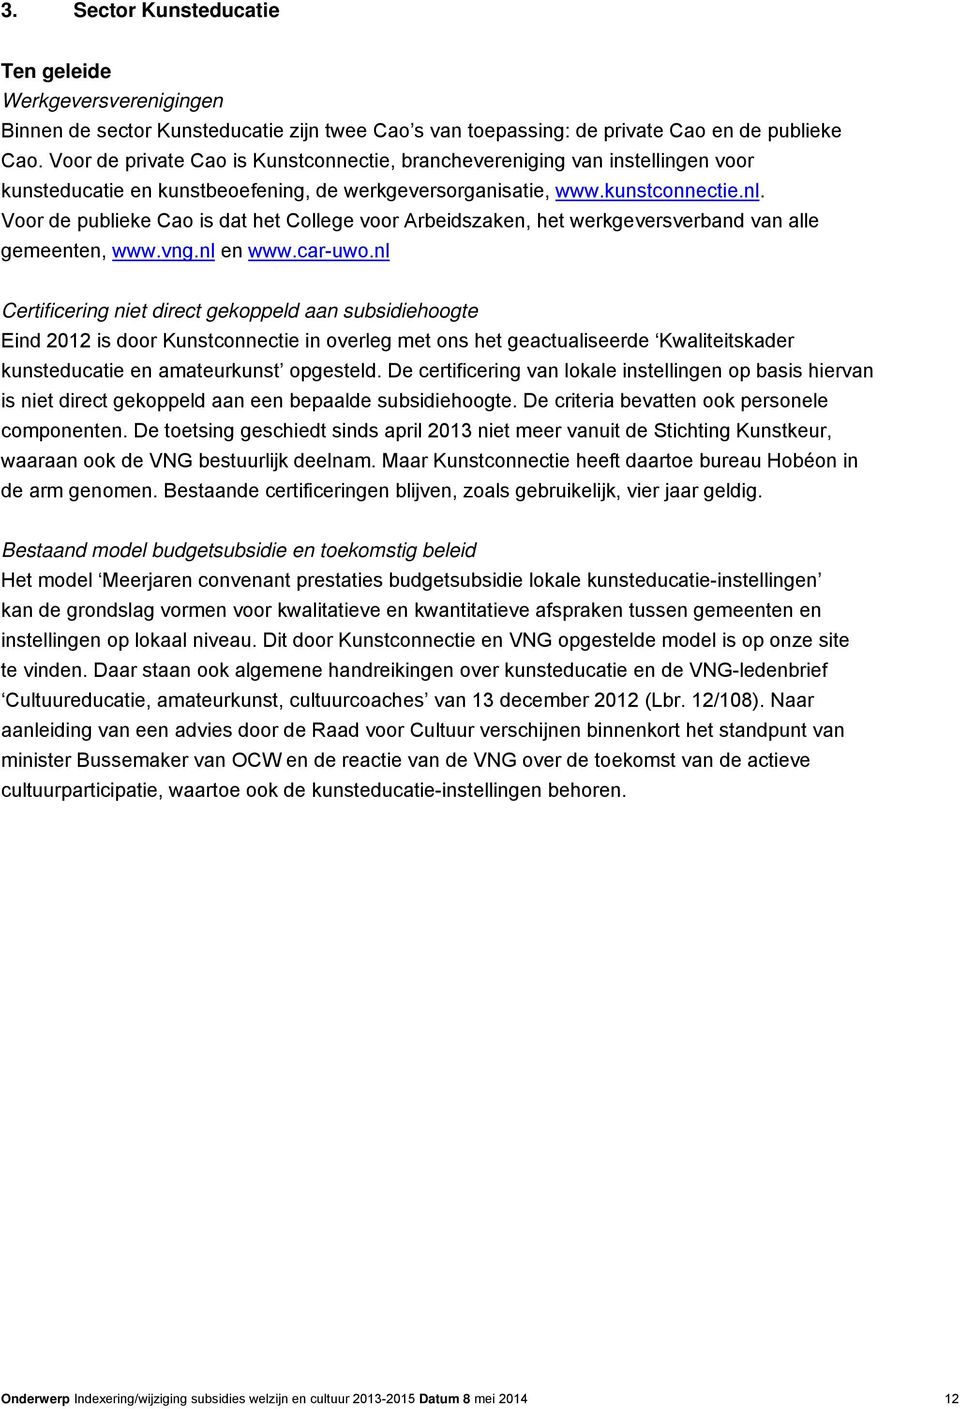 Voor de publieke Cao is dat het College voor Arbeidszaken, het werkgeversverband van alle gemeenten, www.vng.nl en www.car-uwo.